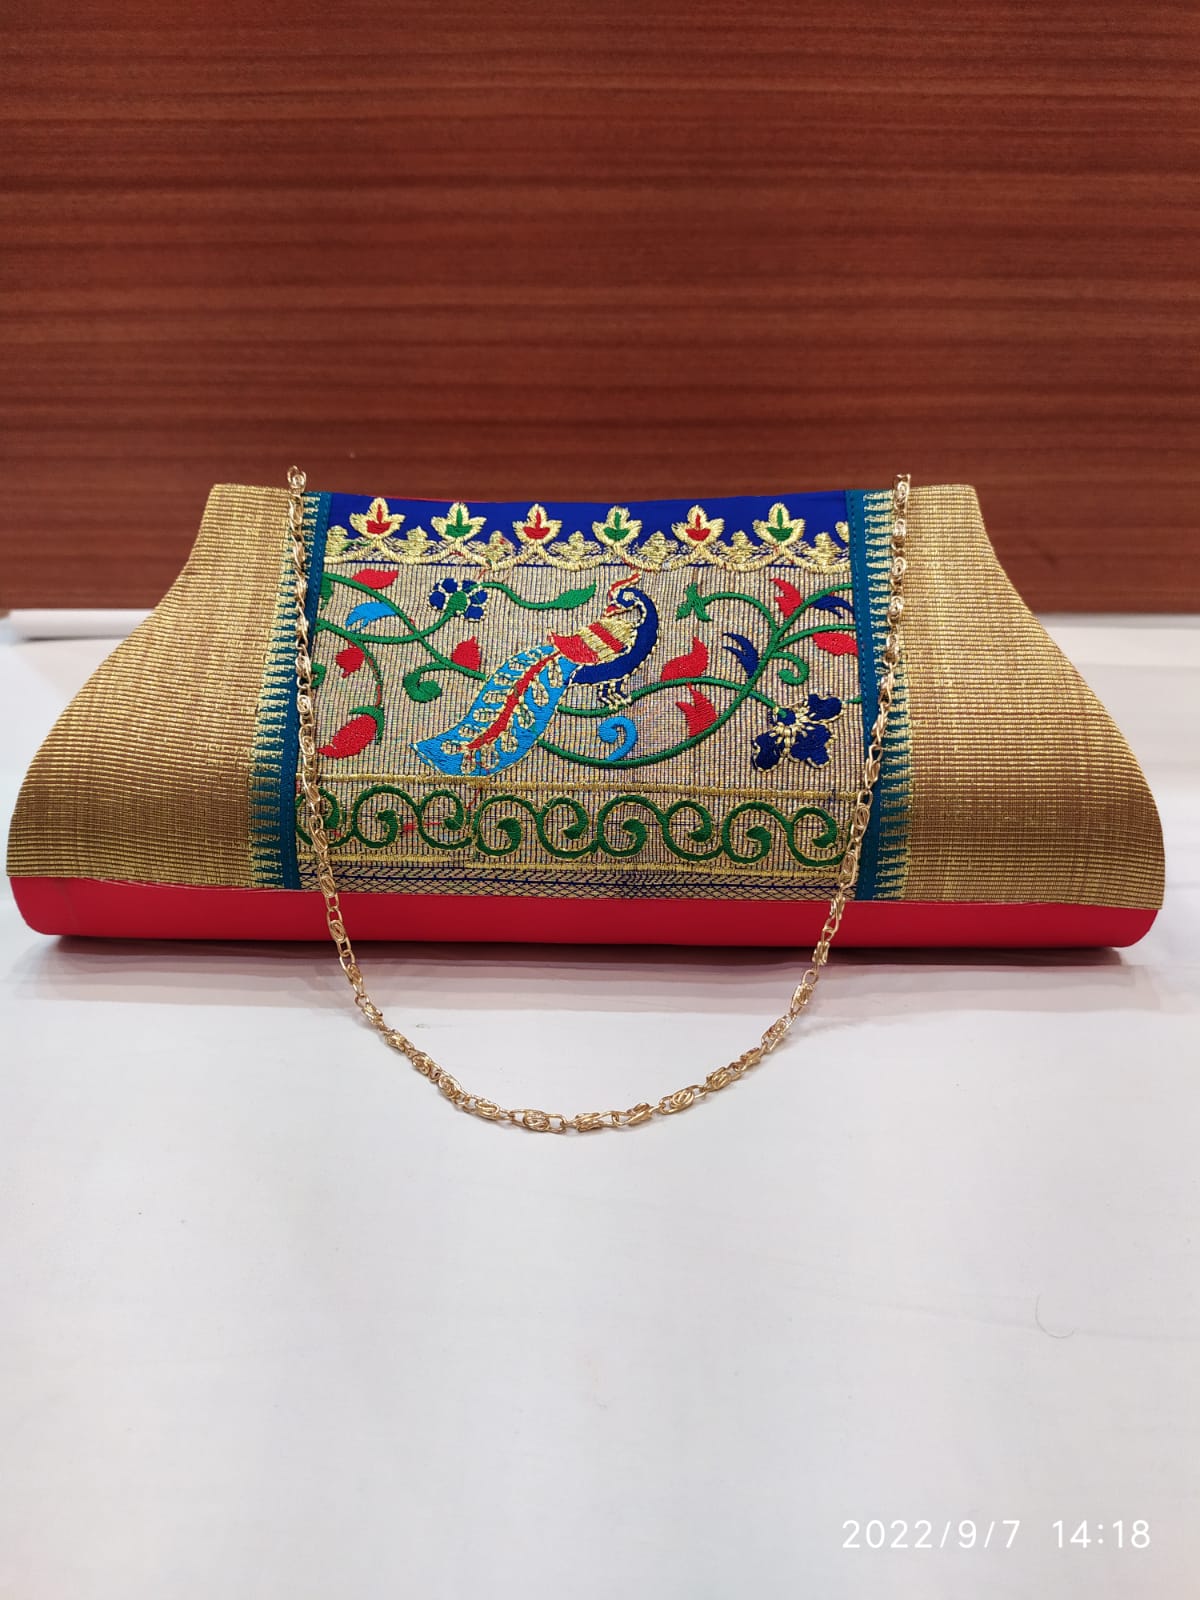 Kshatriya Paithani All Colours Large Paithani Handbag, Size: 12.8*10.2 at  Rs 1350/piece in Yeola